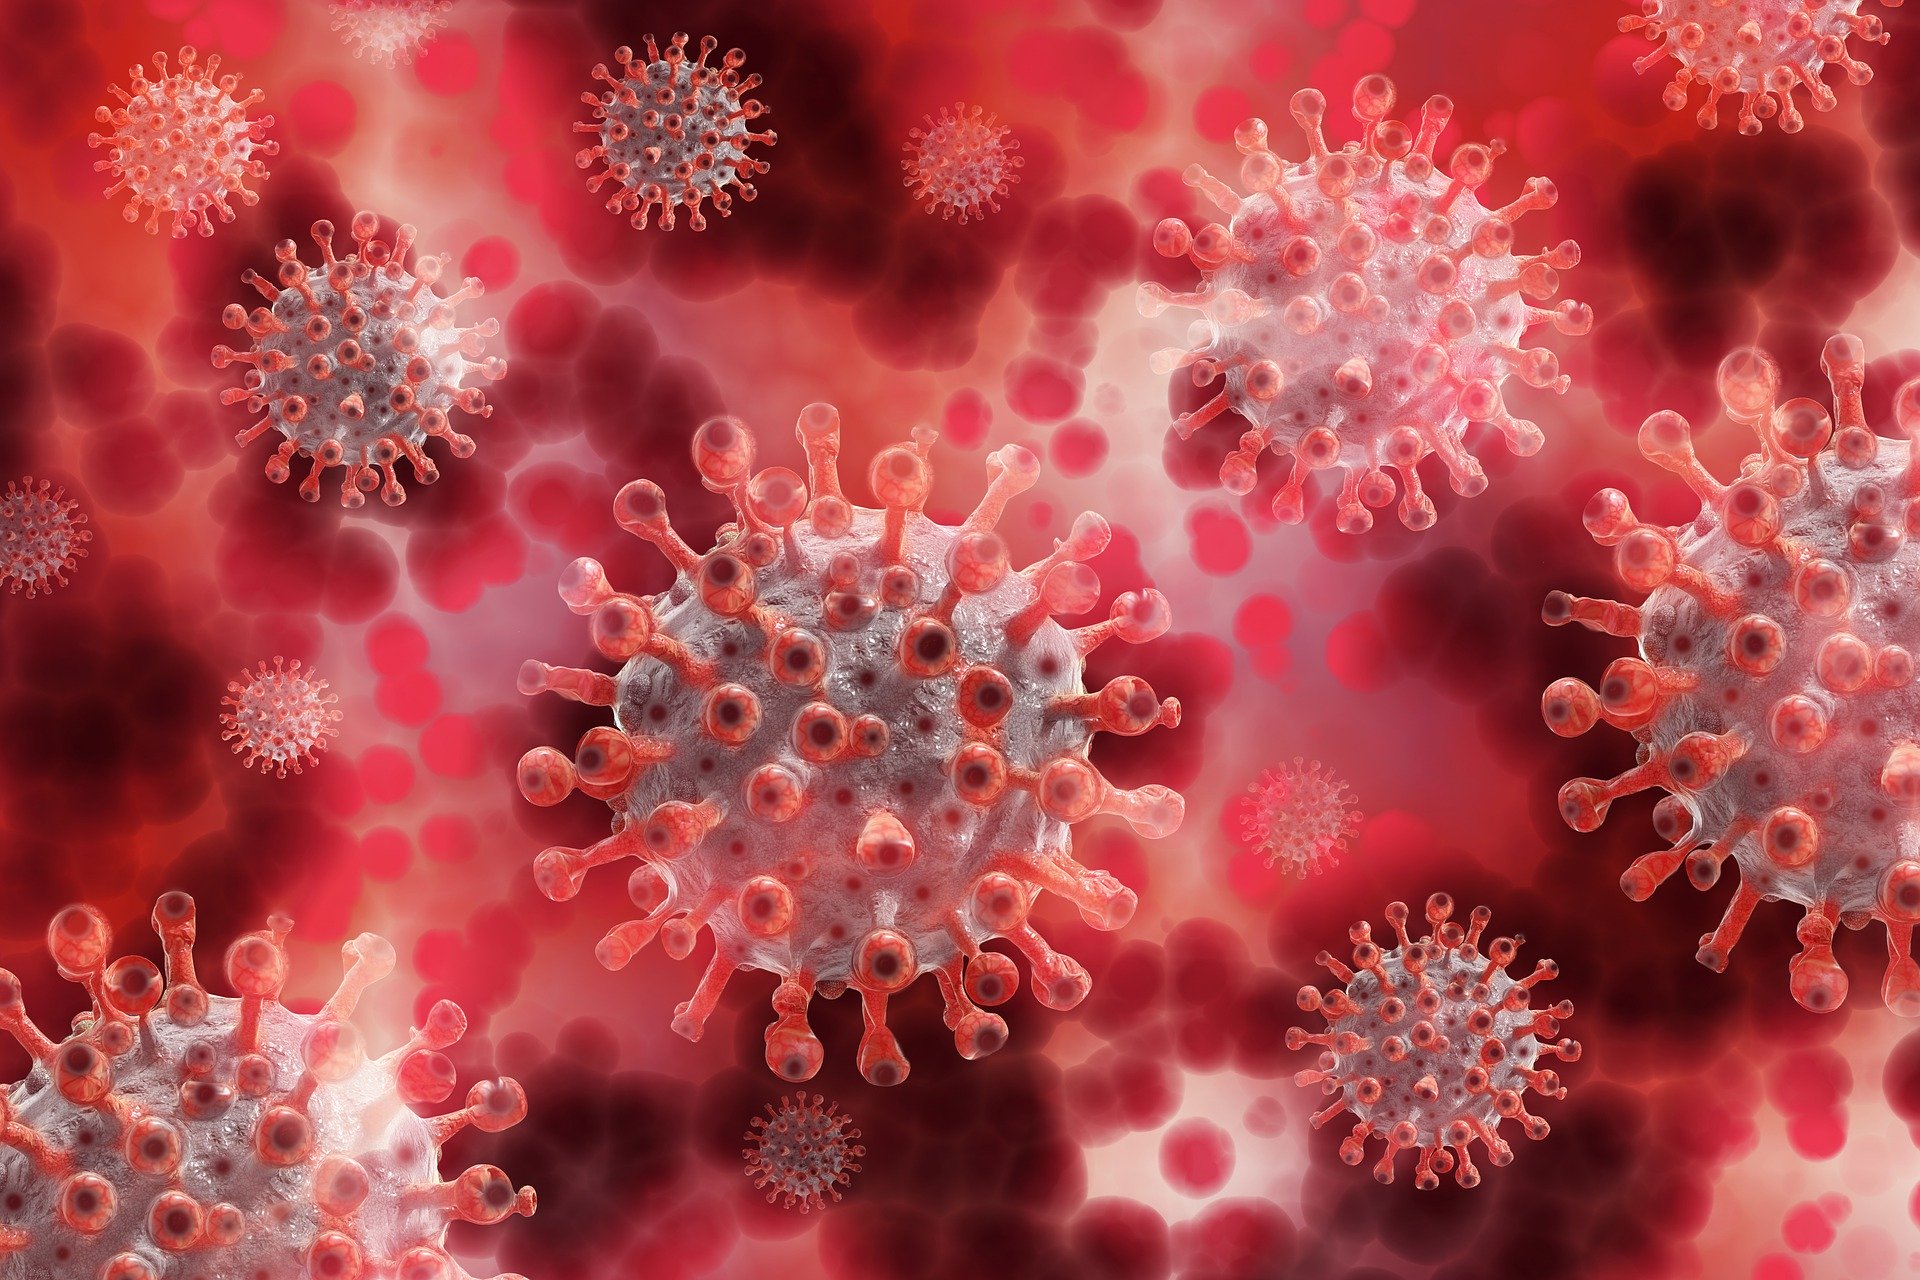 Covid: su “Nature” studio sull’efficacia del plasma sui convalescenti vaccinati contro omicron